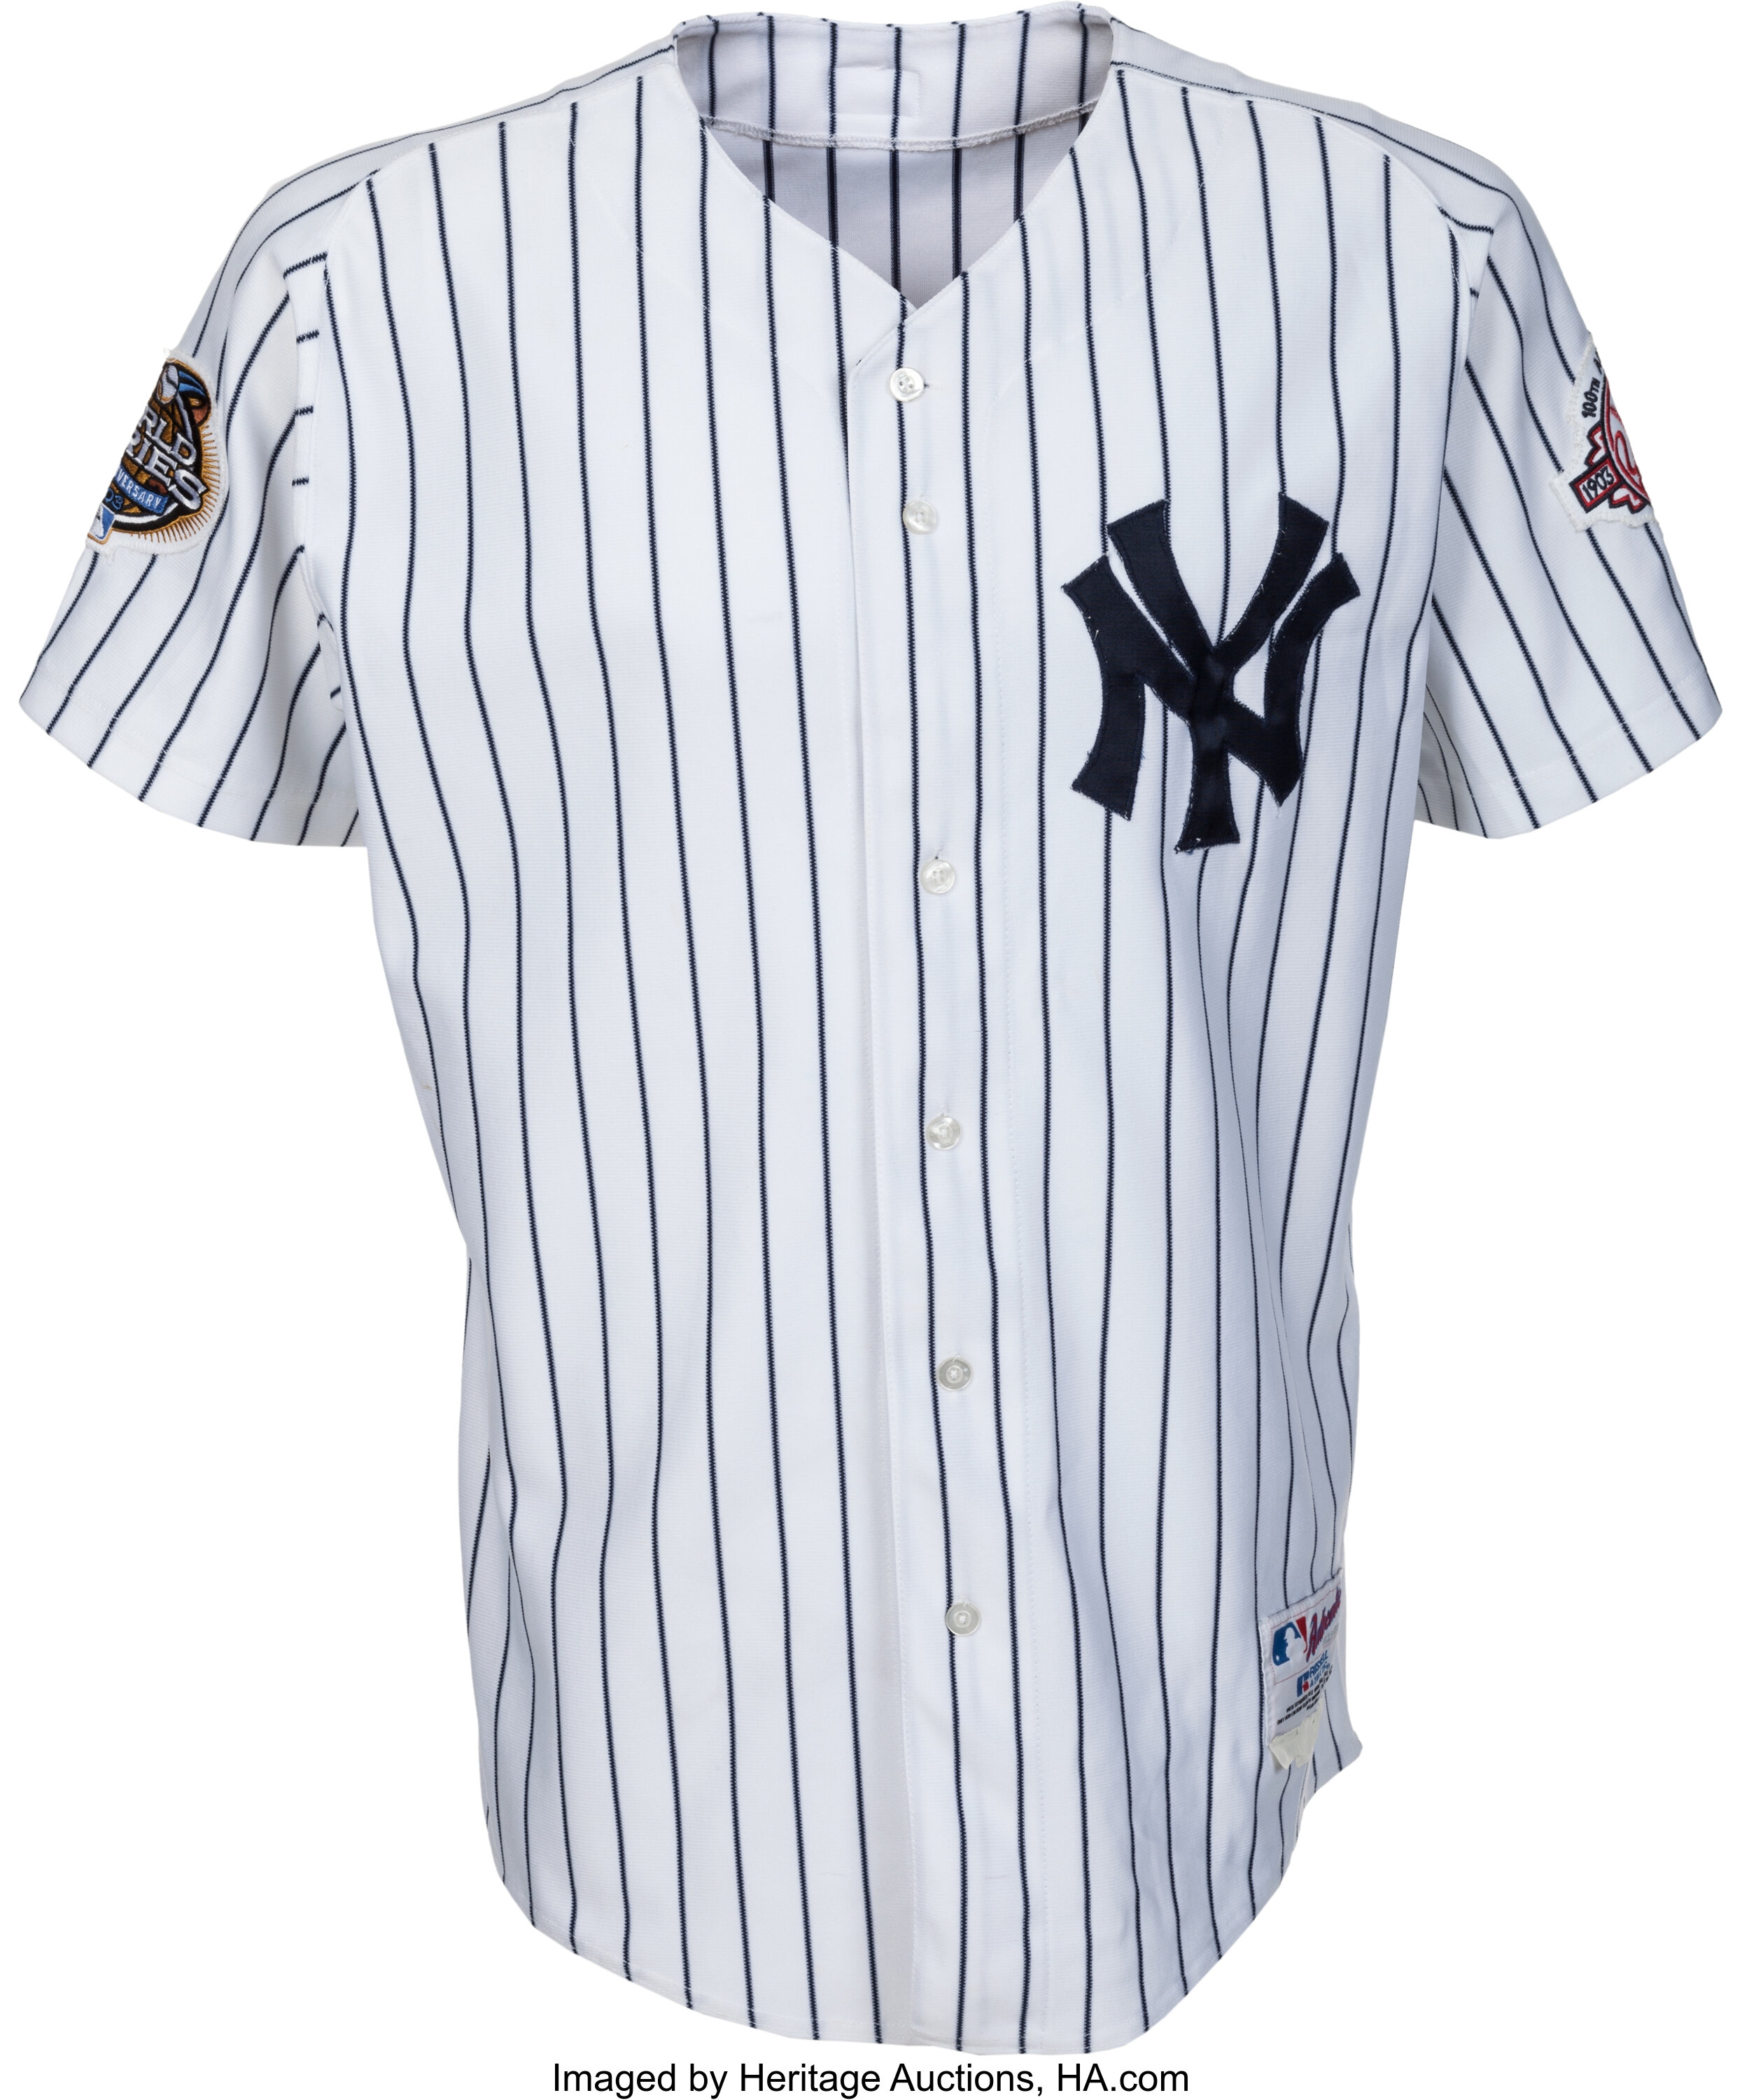 Official Derek Jeter New York Yankees Jerseys, Yankees Derek Jeter Baseball  Jerseys, Uniforms